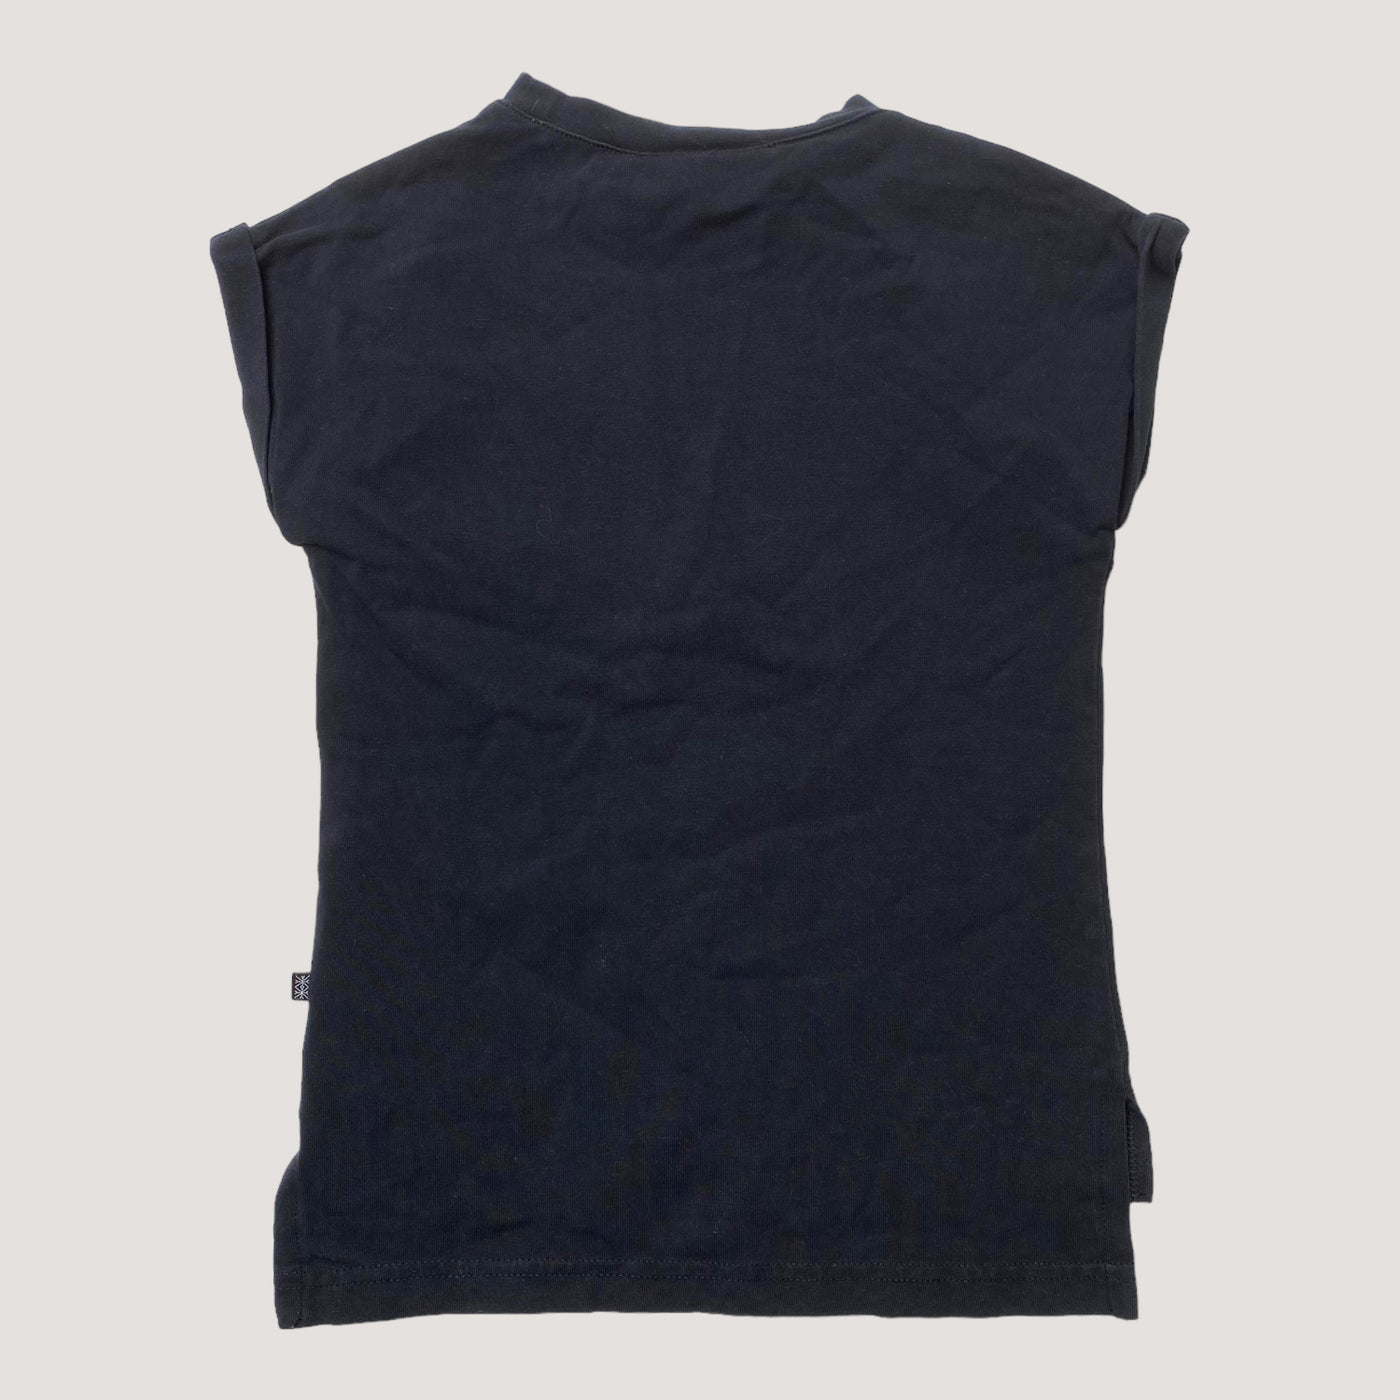 Kaiko t-shirt, black | 86/92cm